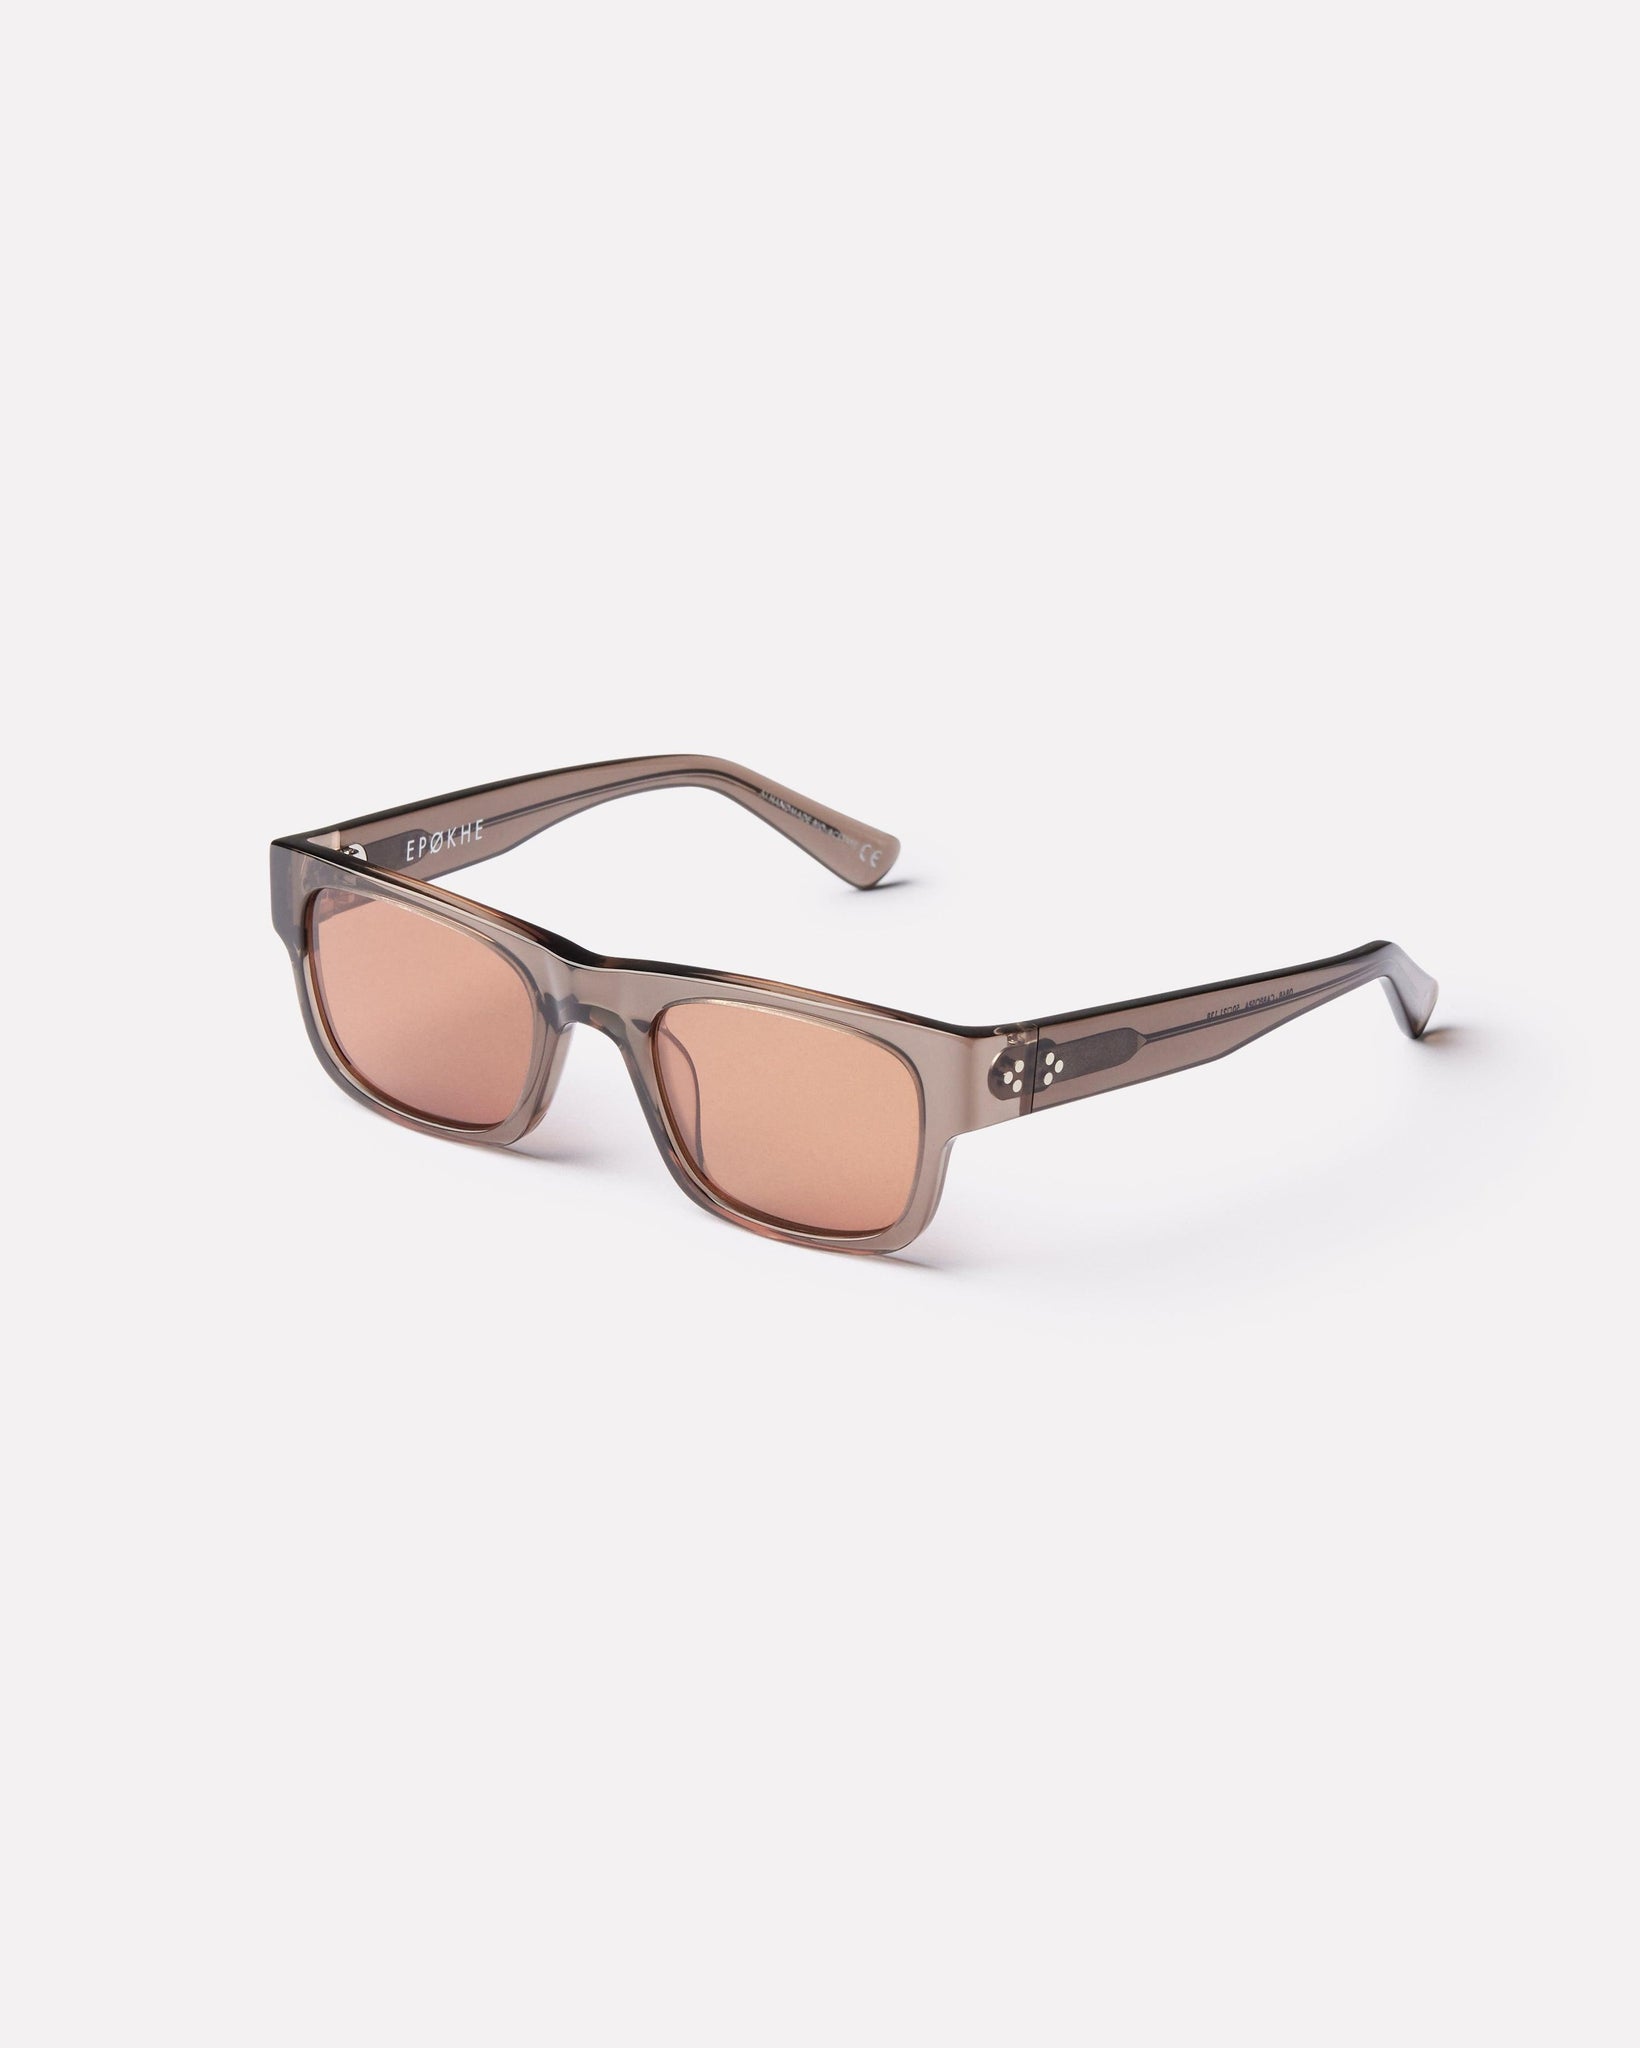 Uzi - Carbon Polished / Sepia - Sunglasses - EPOKHE EYEWEAR